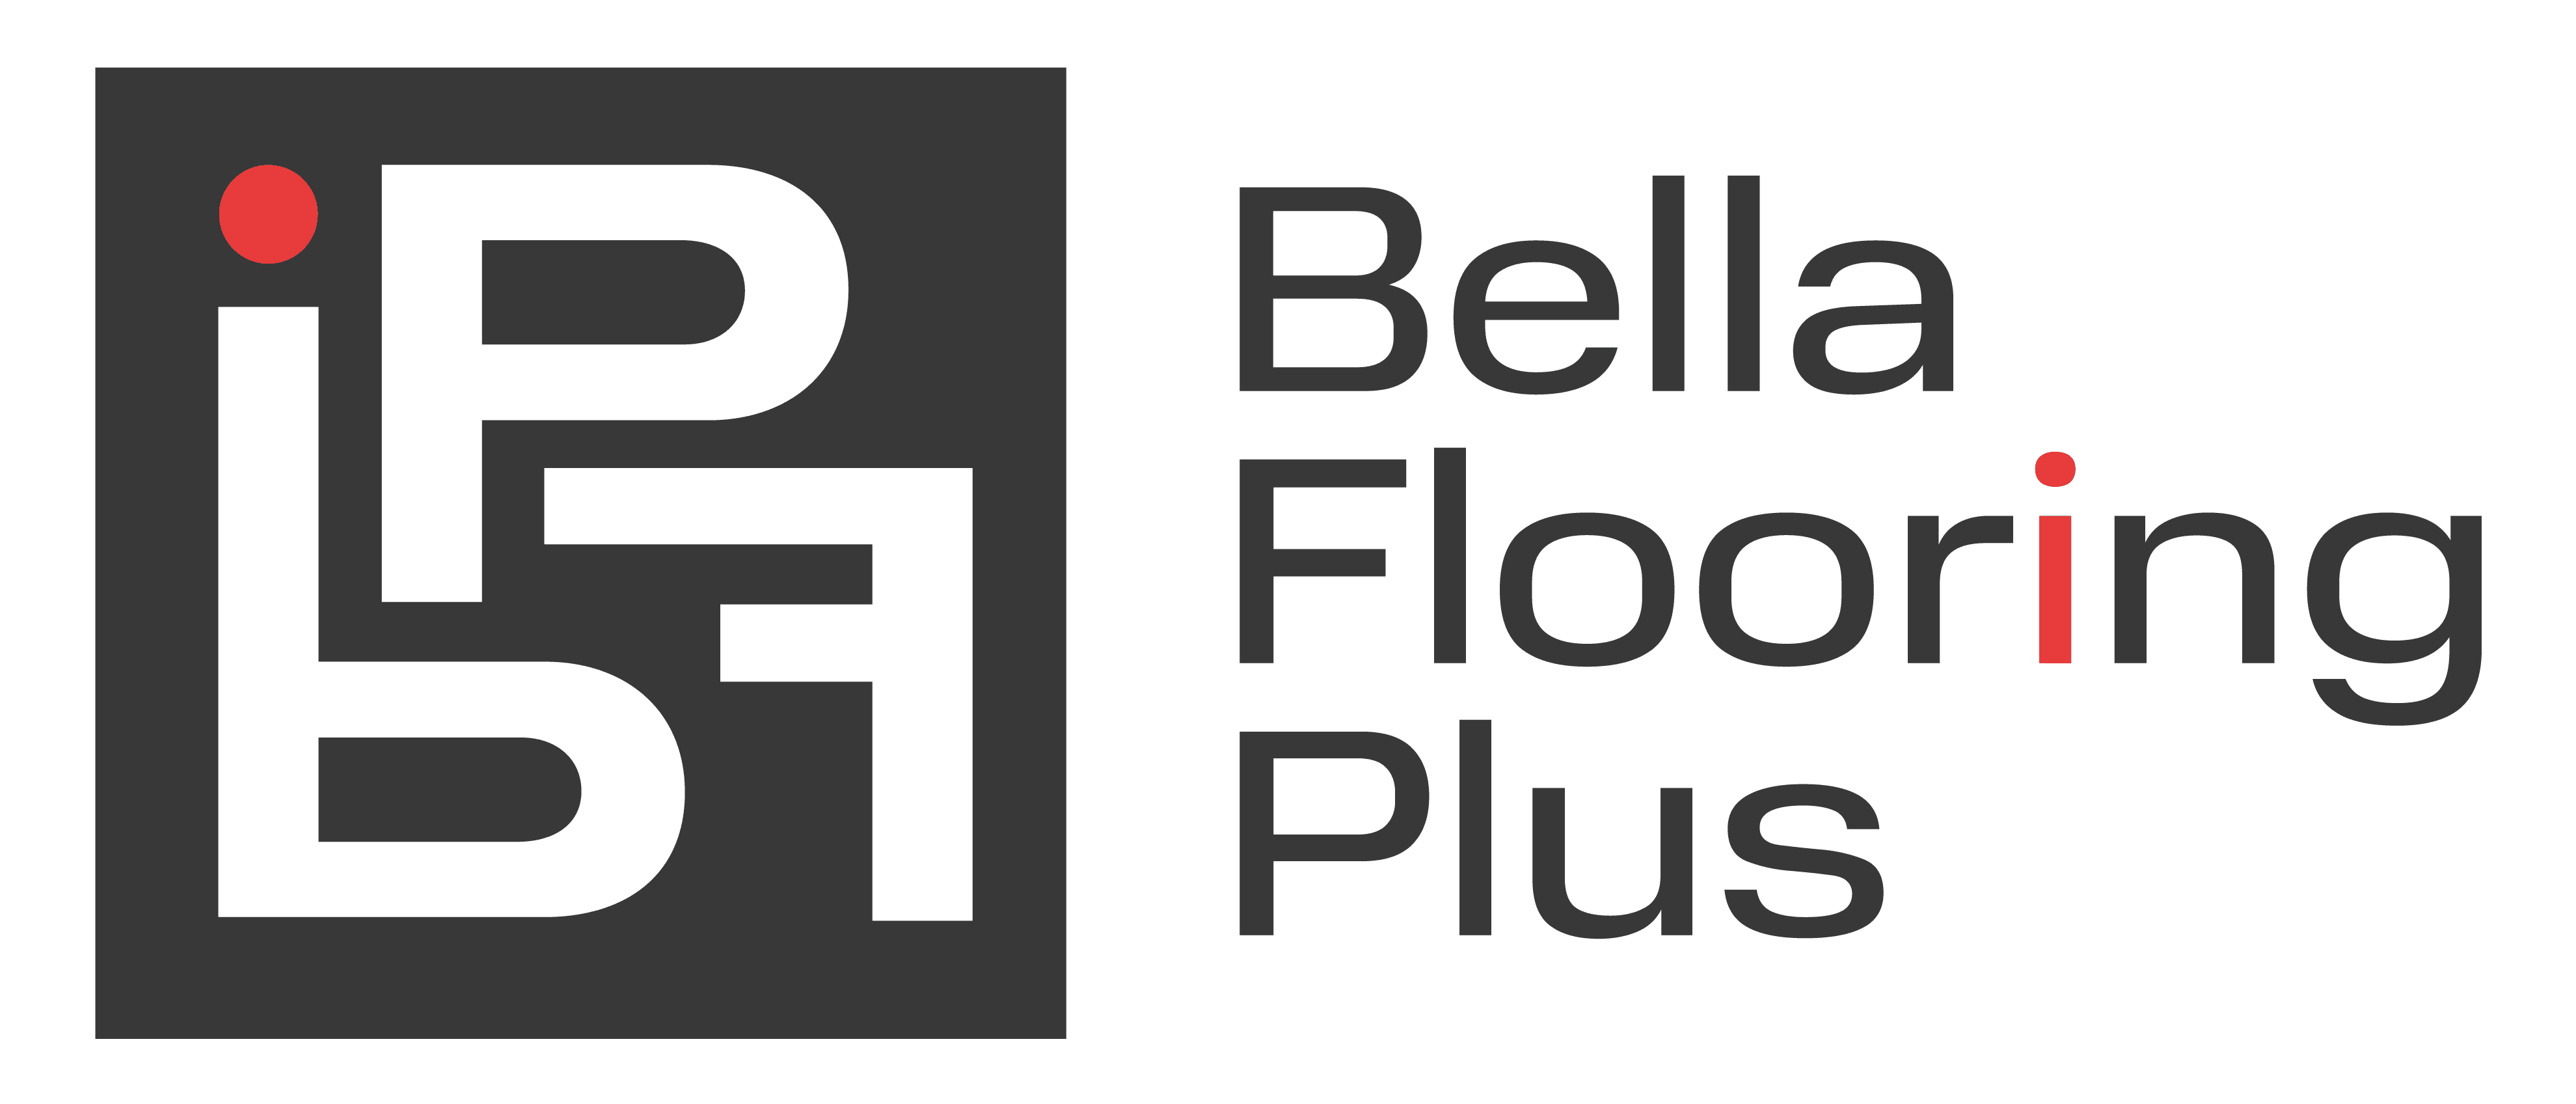 Bella flooring plus